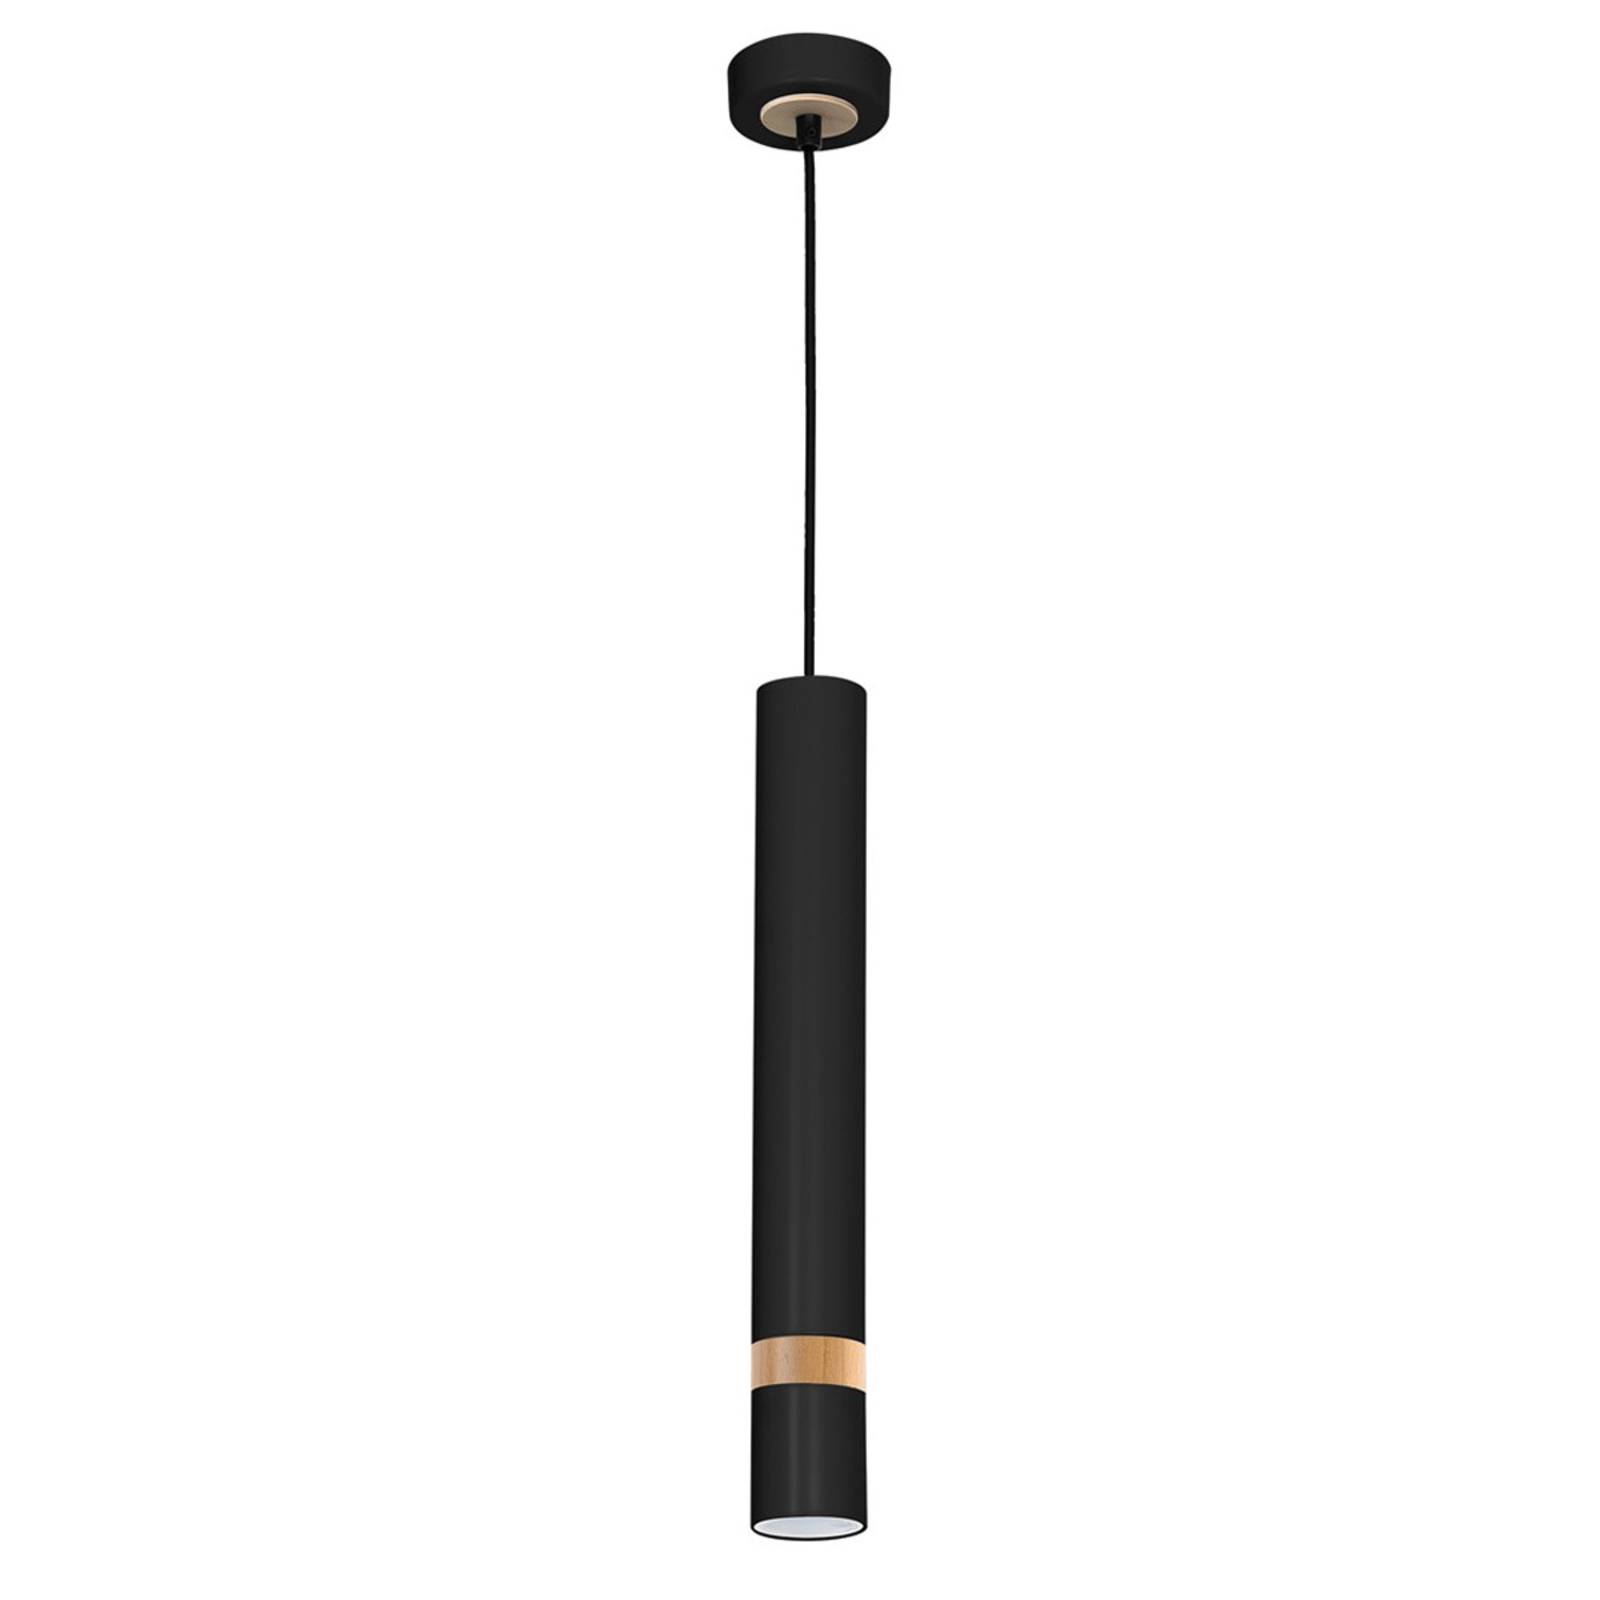 Hanglamp Joker, zwart/hout, 1-lamp